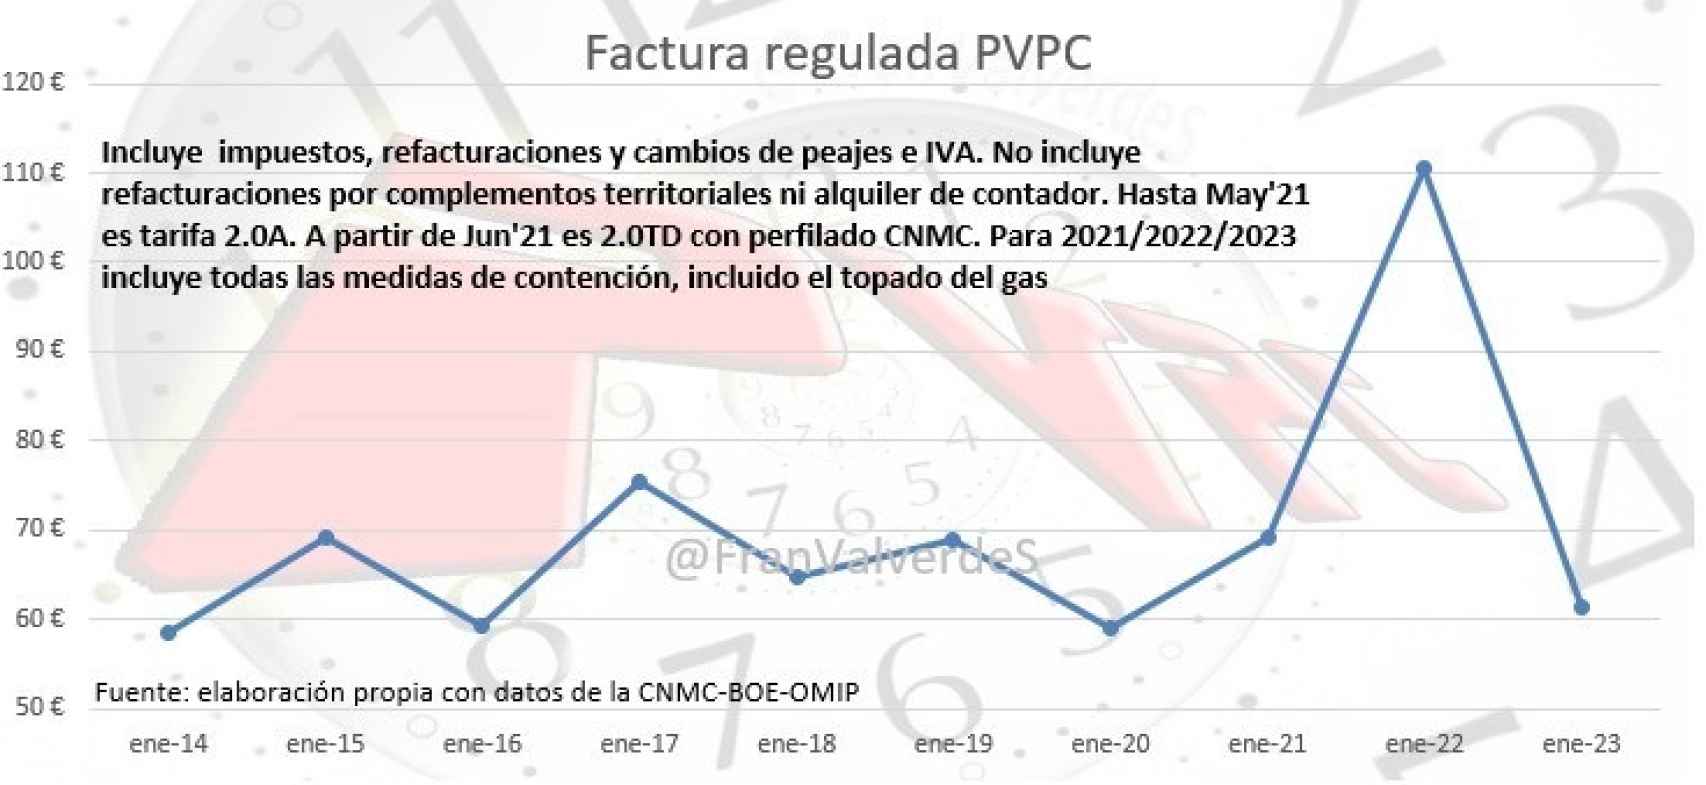 Factura regulada PVPC de los eneros de los últimos 10 años.